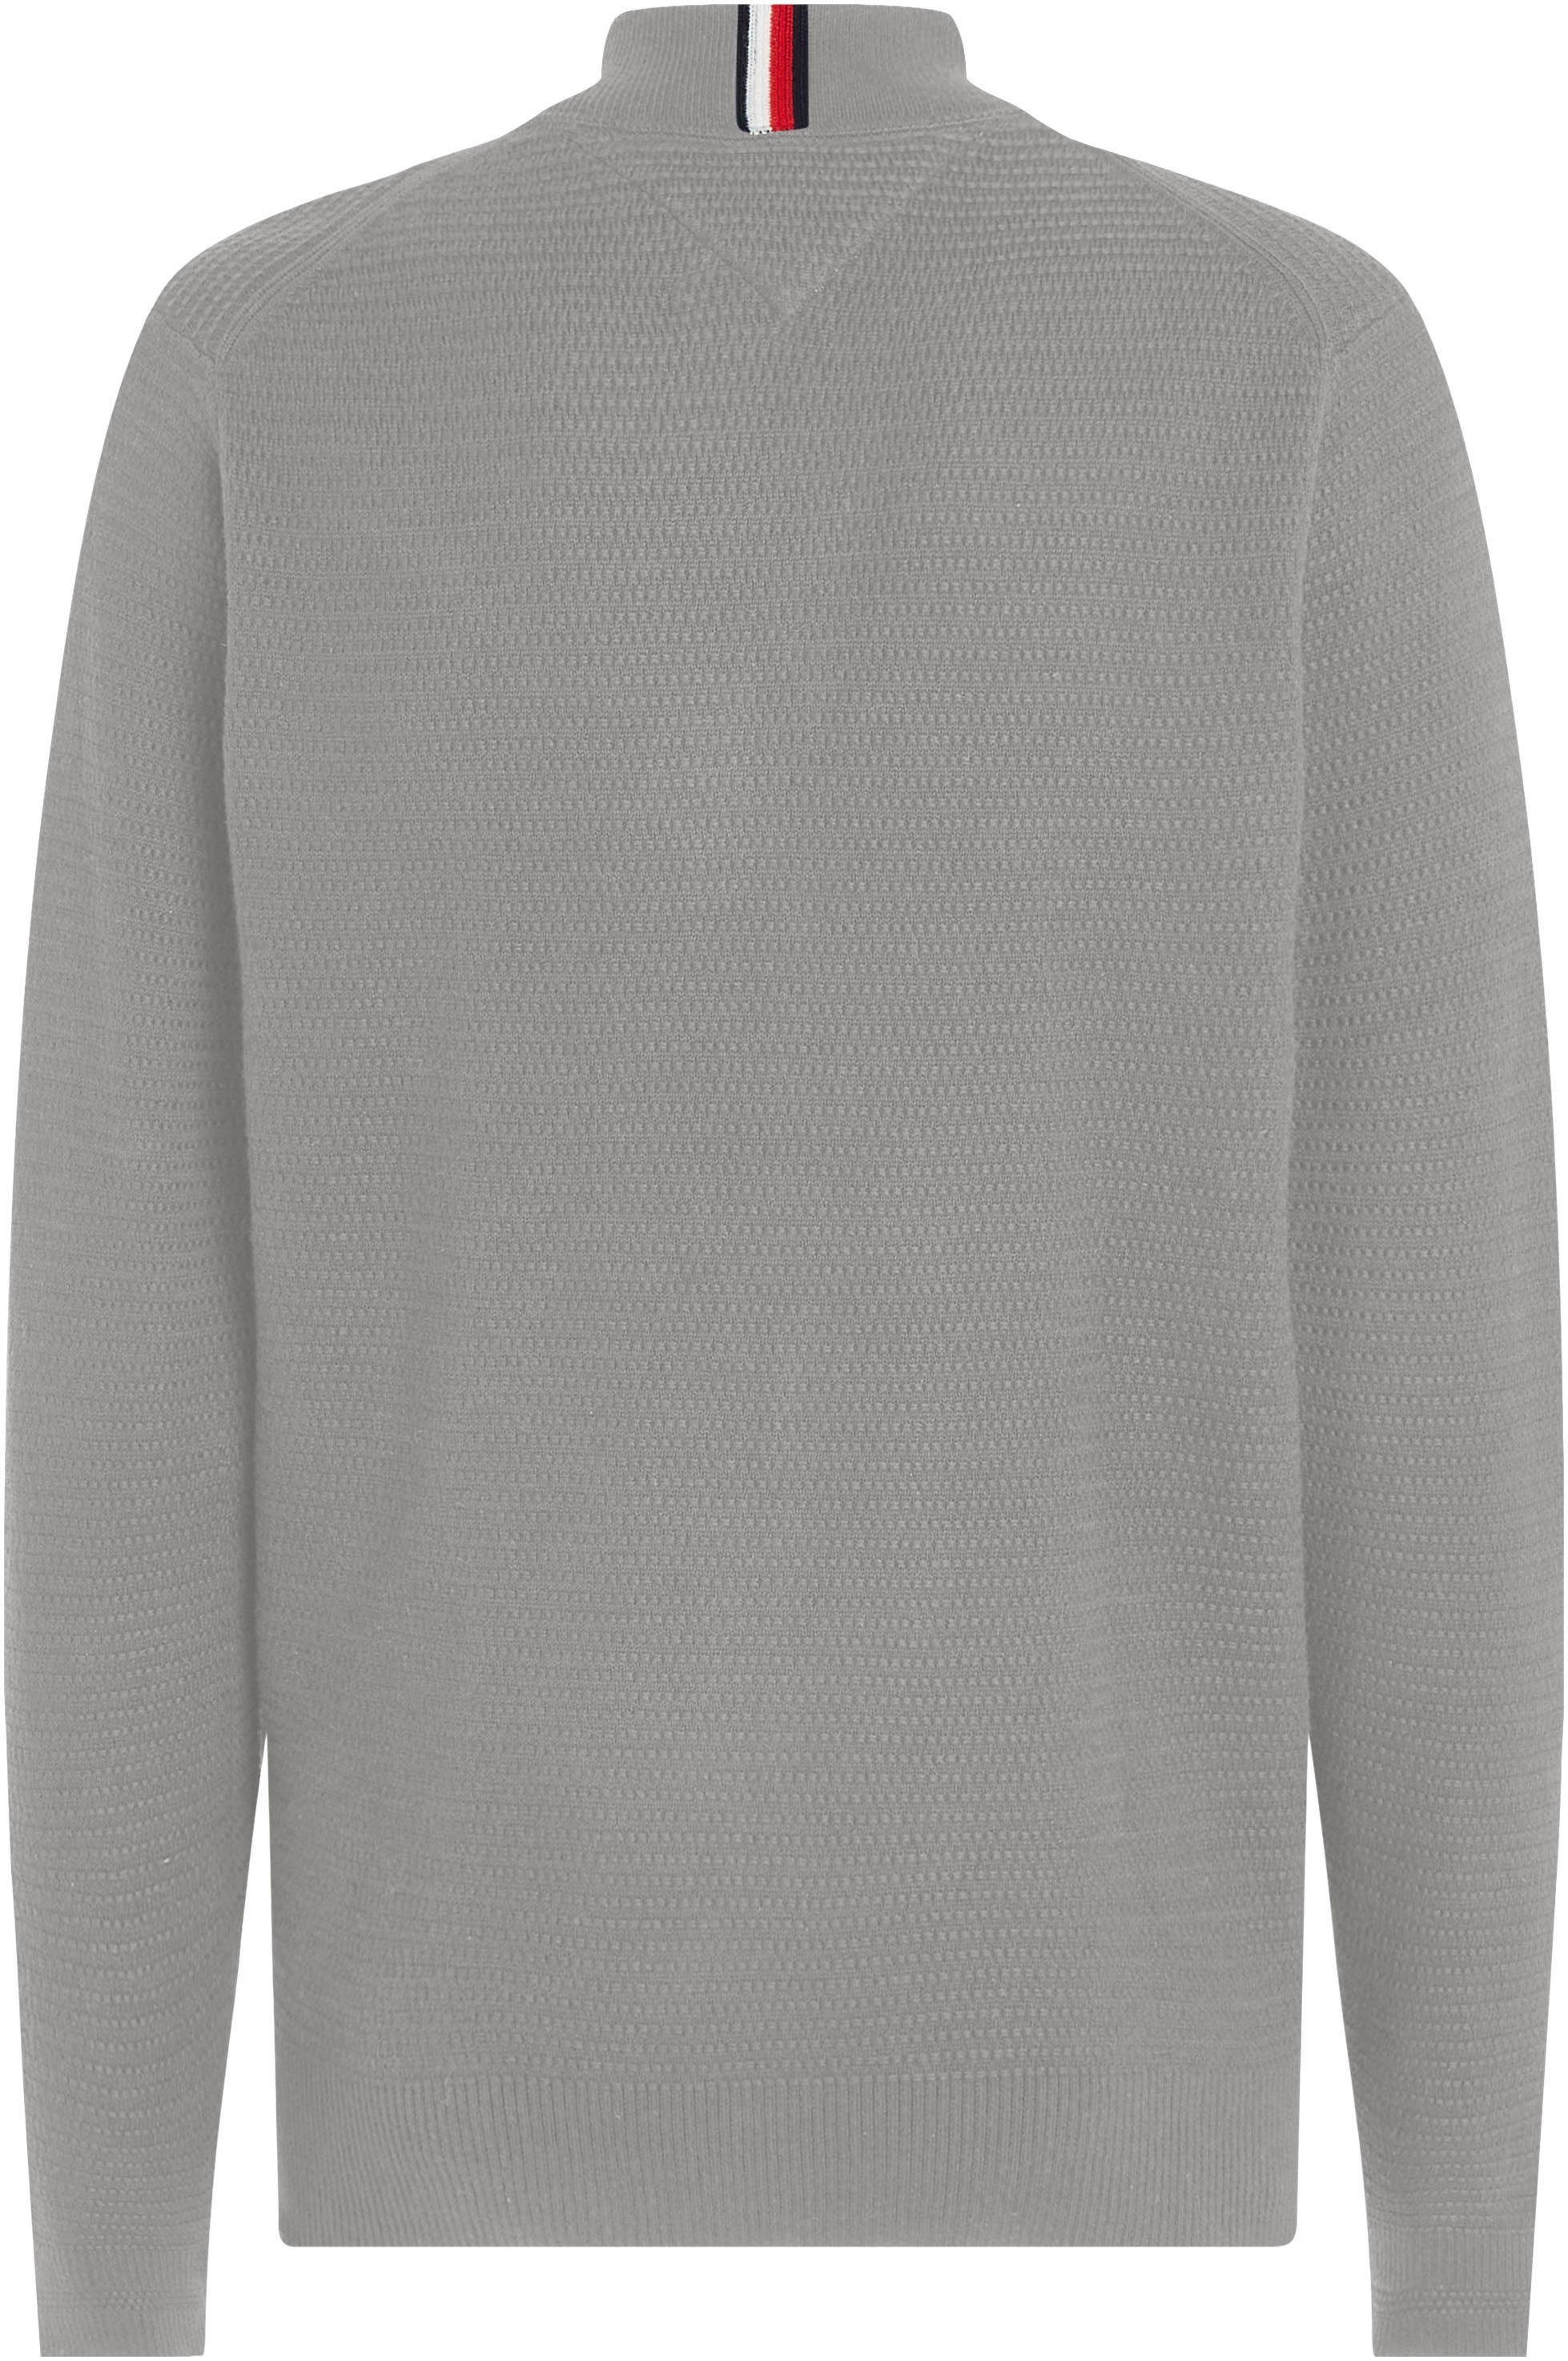 Tommy Hilfiger Sweatshirt INTERLACED Optik Grey THROUGH in Medium ZIP BASEBALL strukturierter Heather